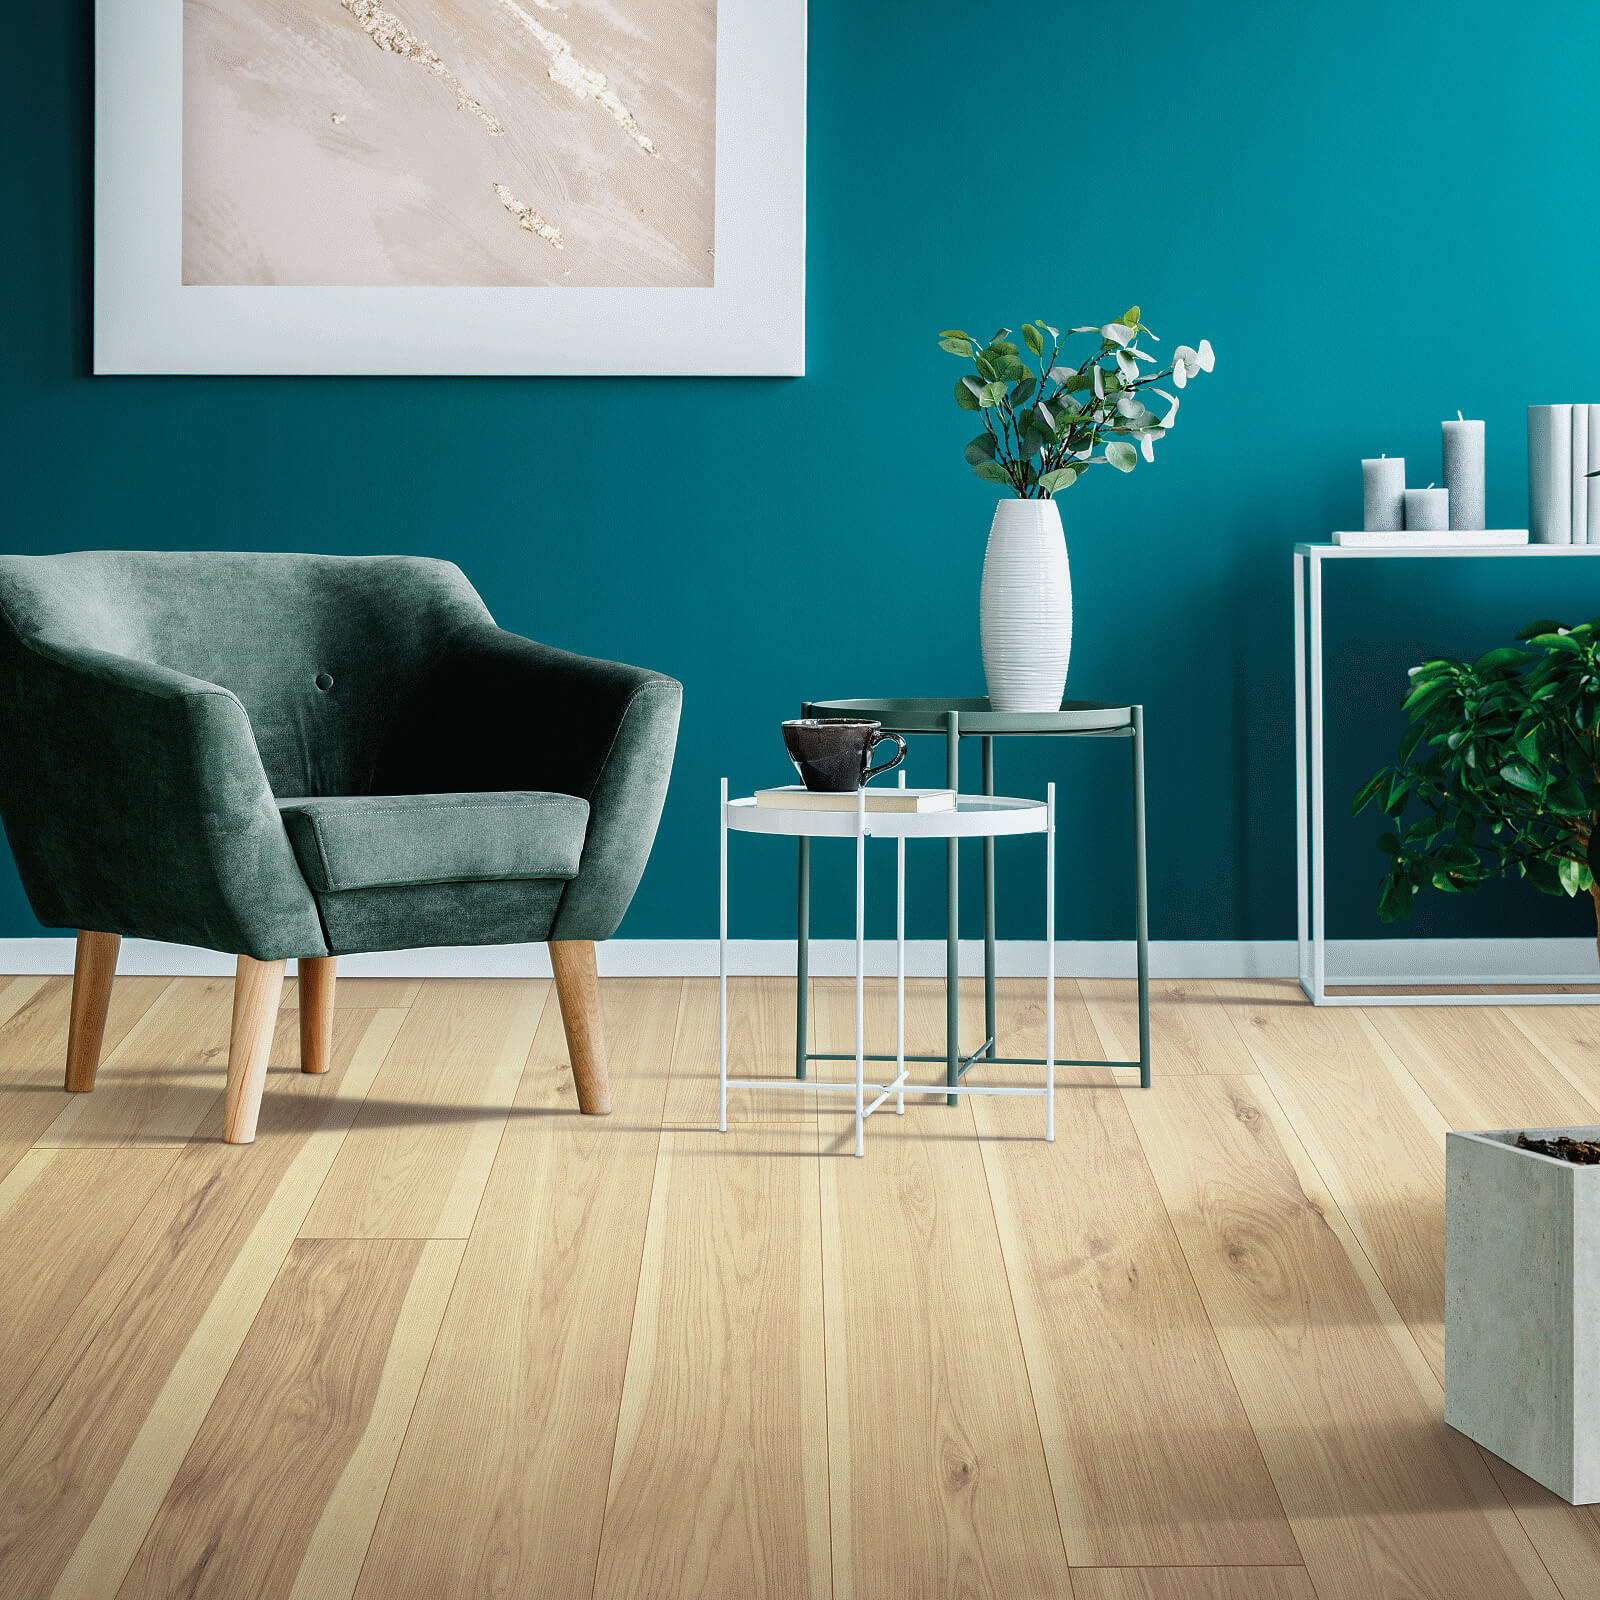 Green chair on floor | Gunn Flooring Company